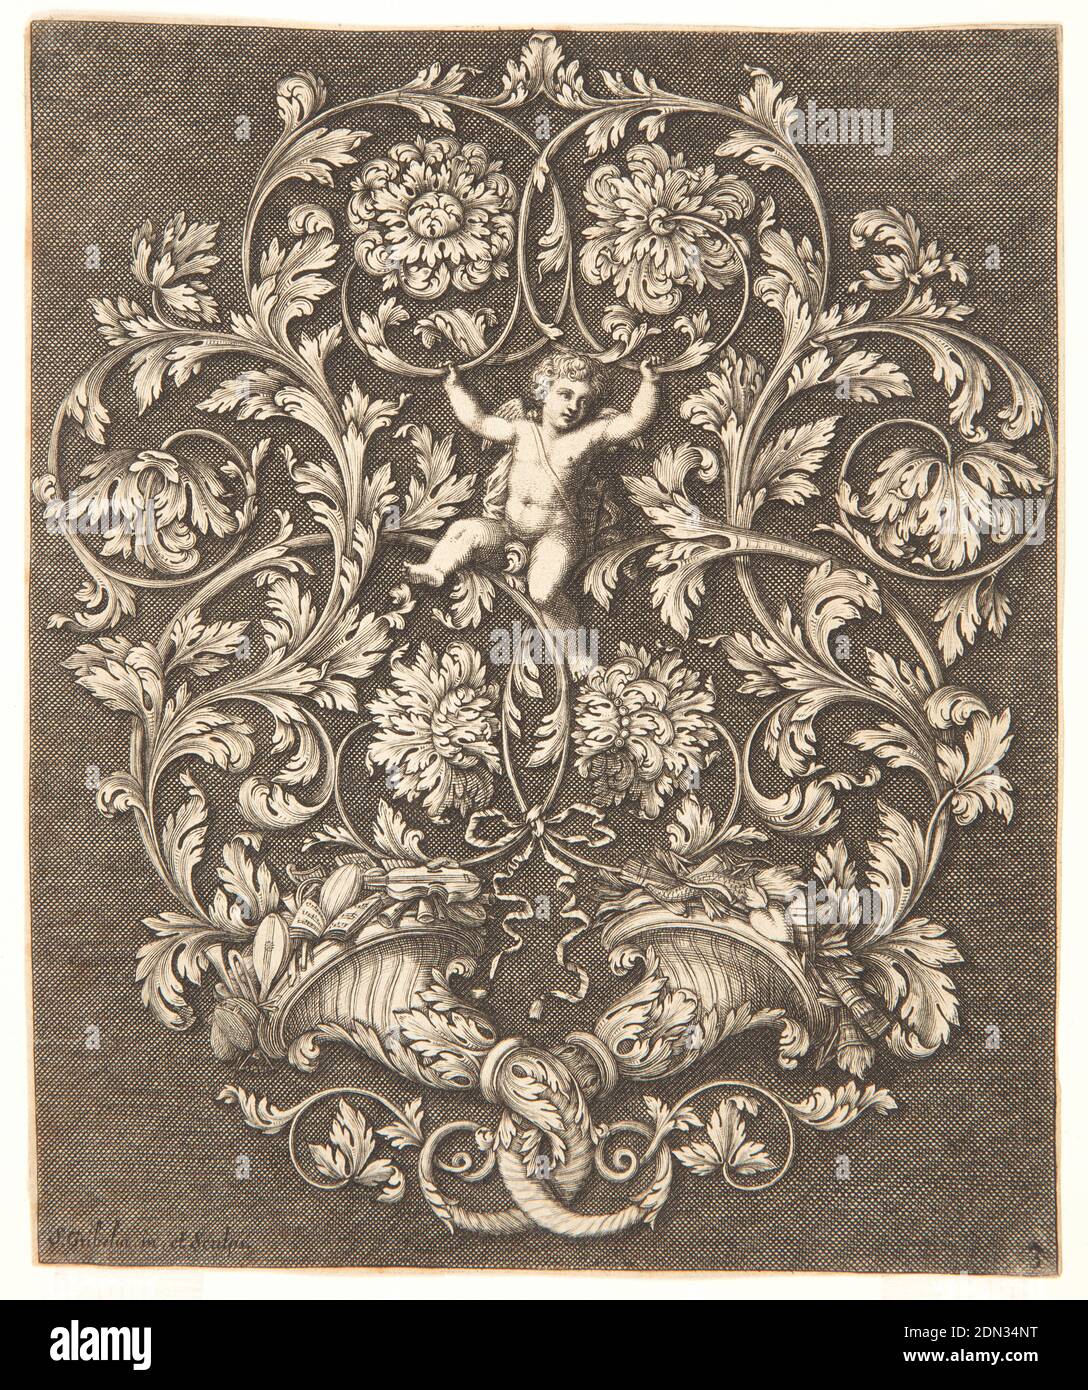 Rinceaux Design avec Putto, planche 3, d'UN nouveau livre d'ornements utiles à tous les artistes, Simon Gribelin II, français, 1661 - 1733, Etching, gravure sur papier blanc, Cupid est soutenu au centre par des Rinceaux provenant de deux cornucopias enroulés; les attributs de la musique sont dans la cornucopia gauche, les attributs de l'amour dans la droite. Arrière-plan sombre et hachuré. En bas à gauche : . Gribelin In. Et Scups; gauche, 3., France, 1704, ornement, imprimé Banque D'Images